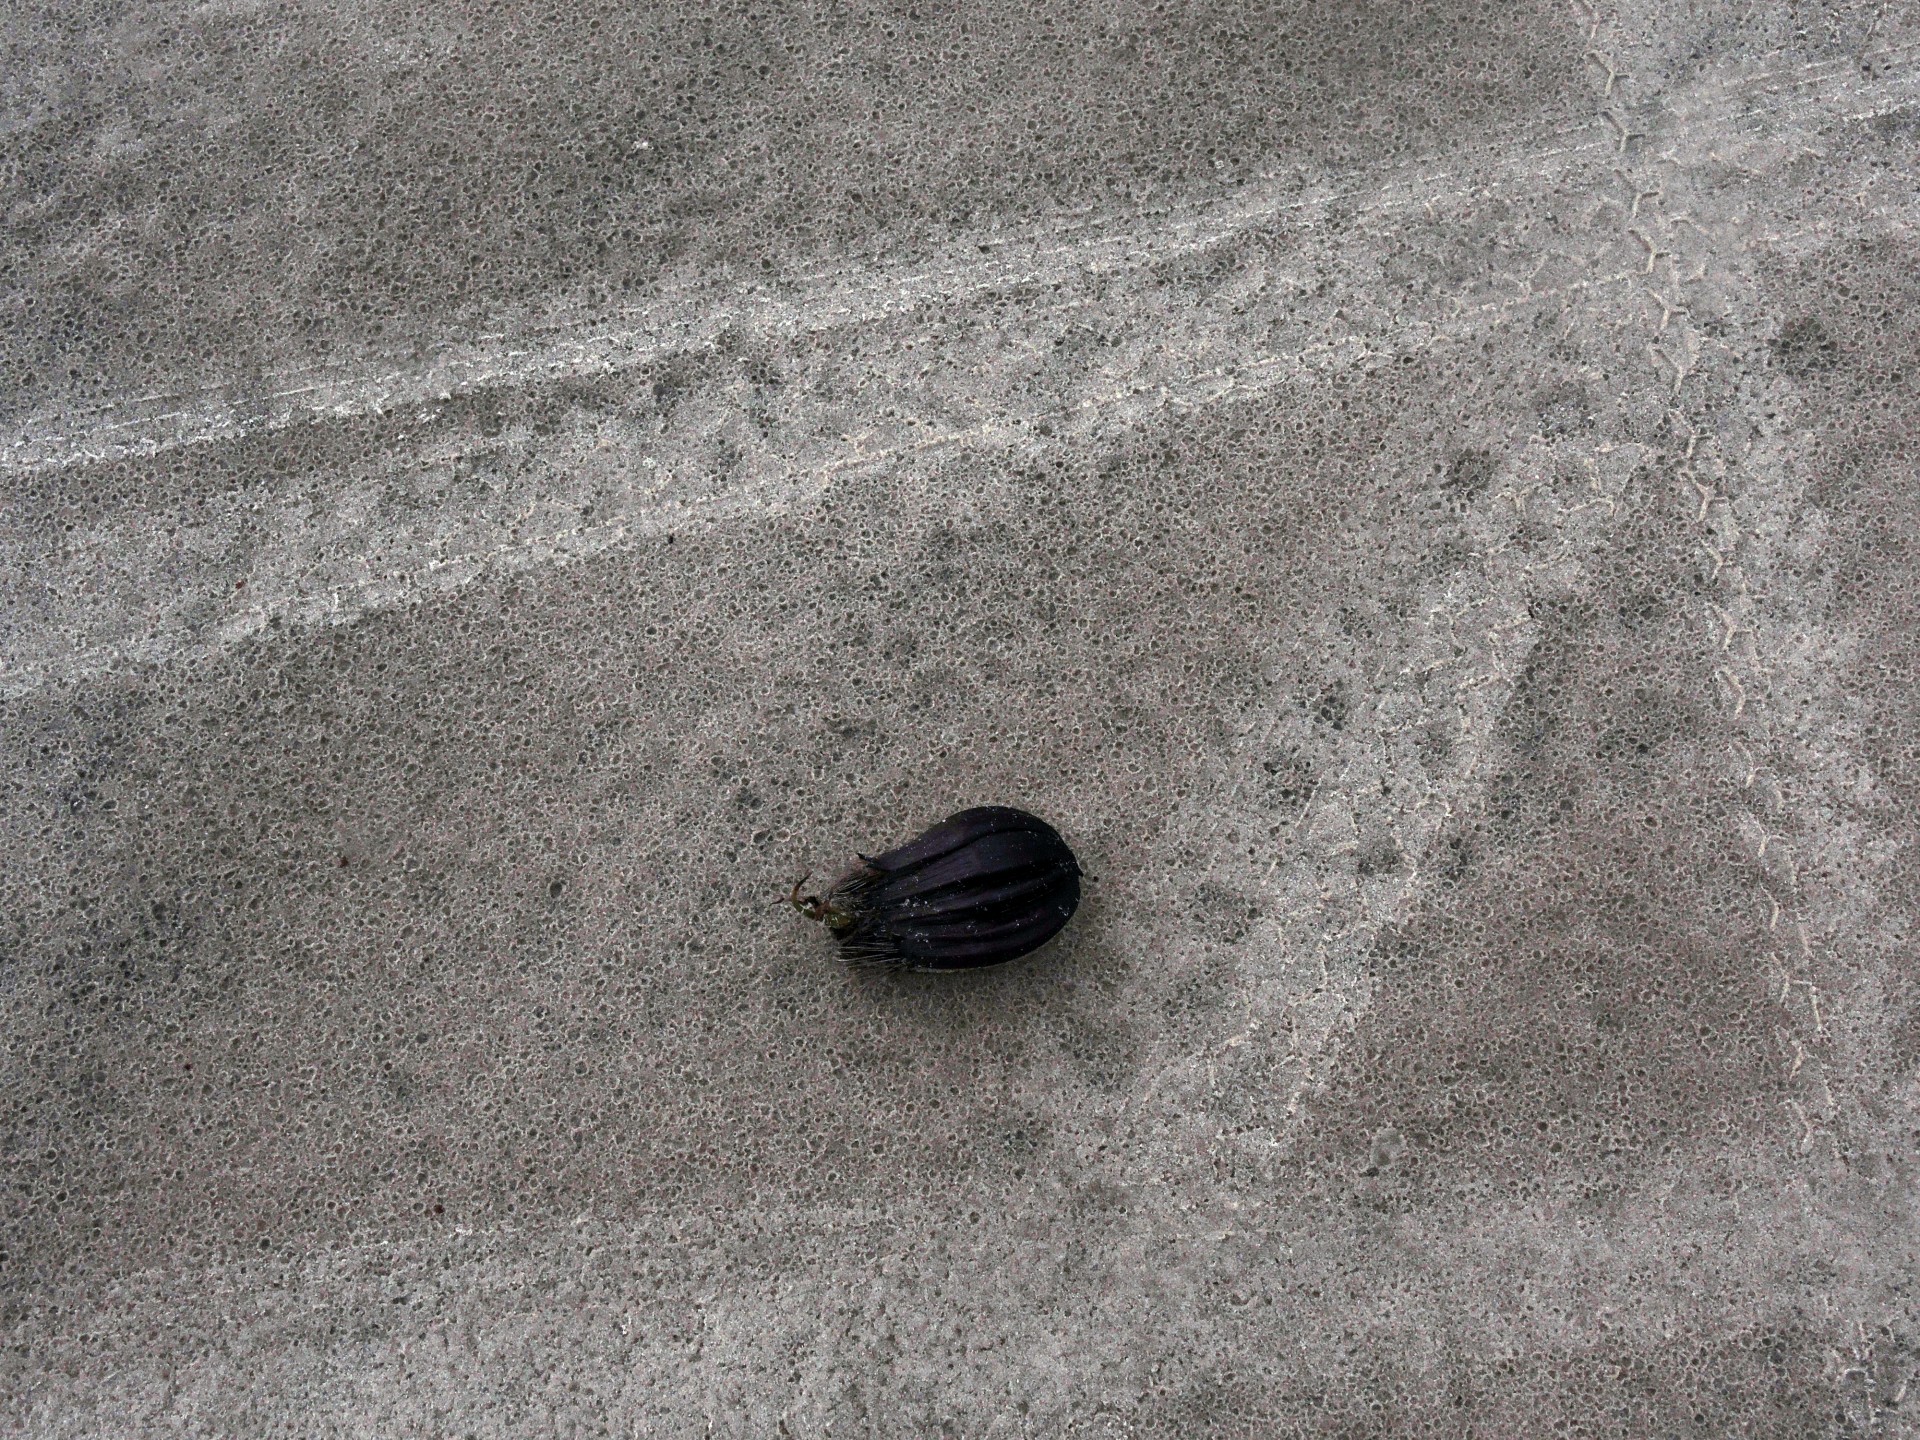 Objekt auf einem Strand